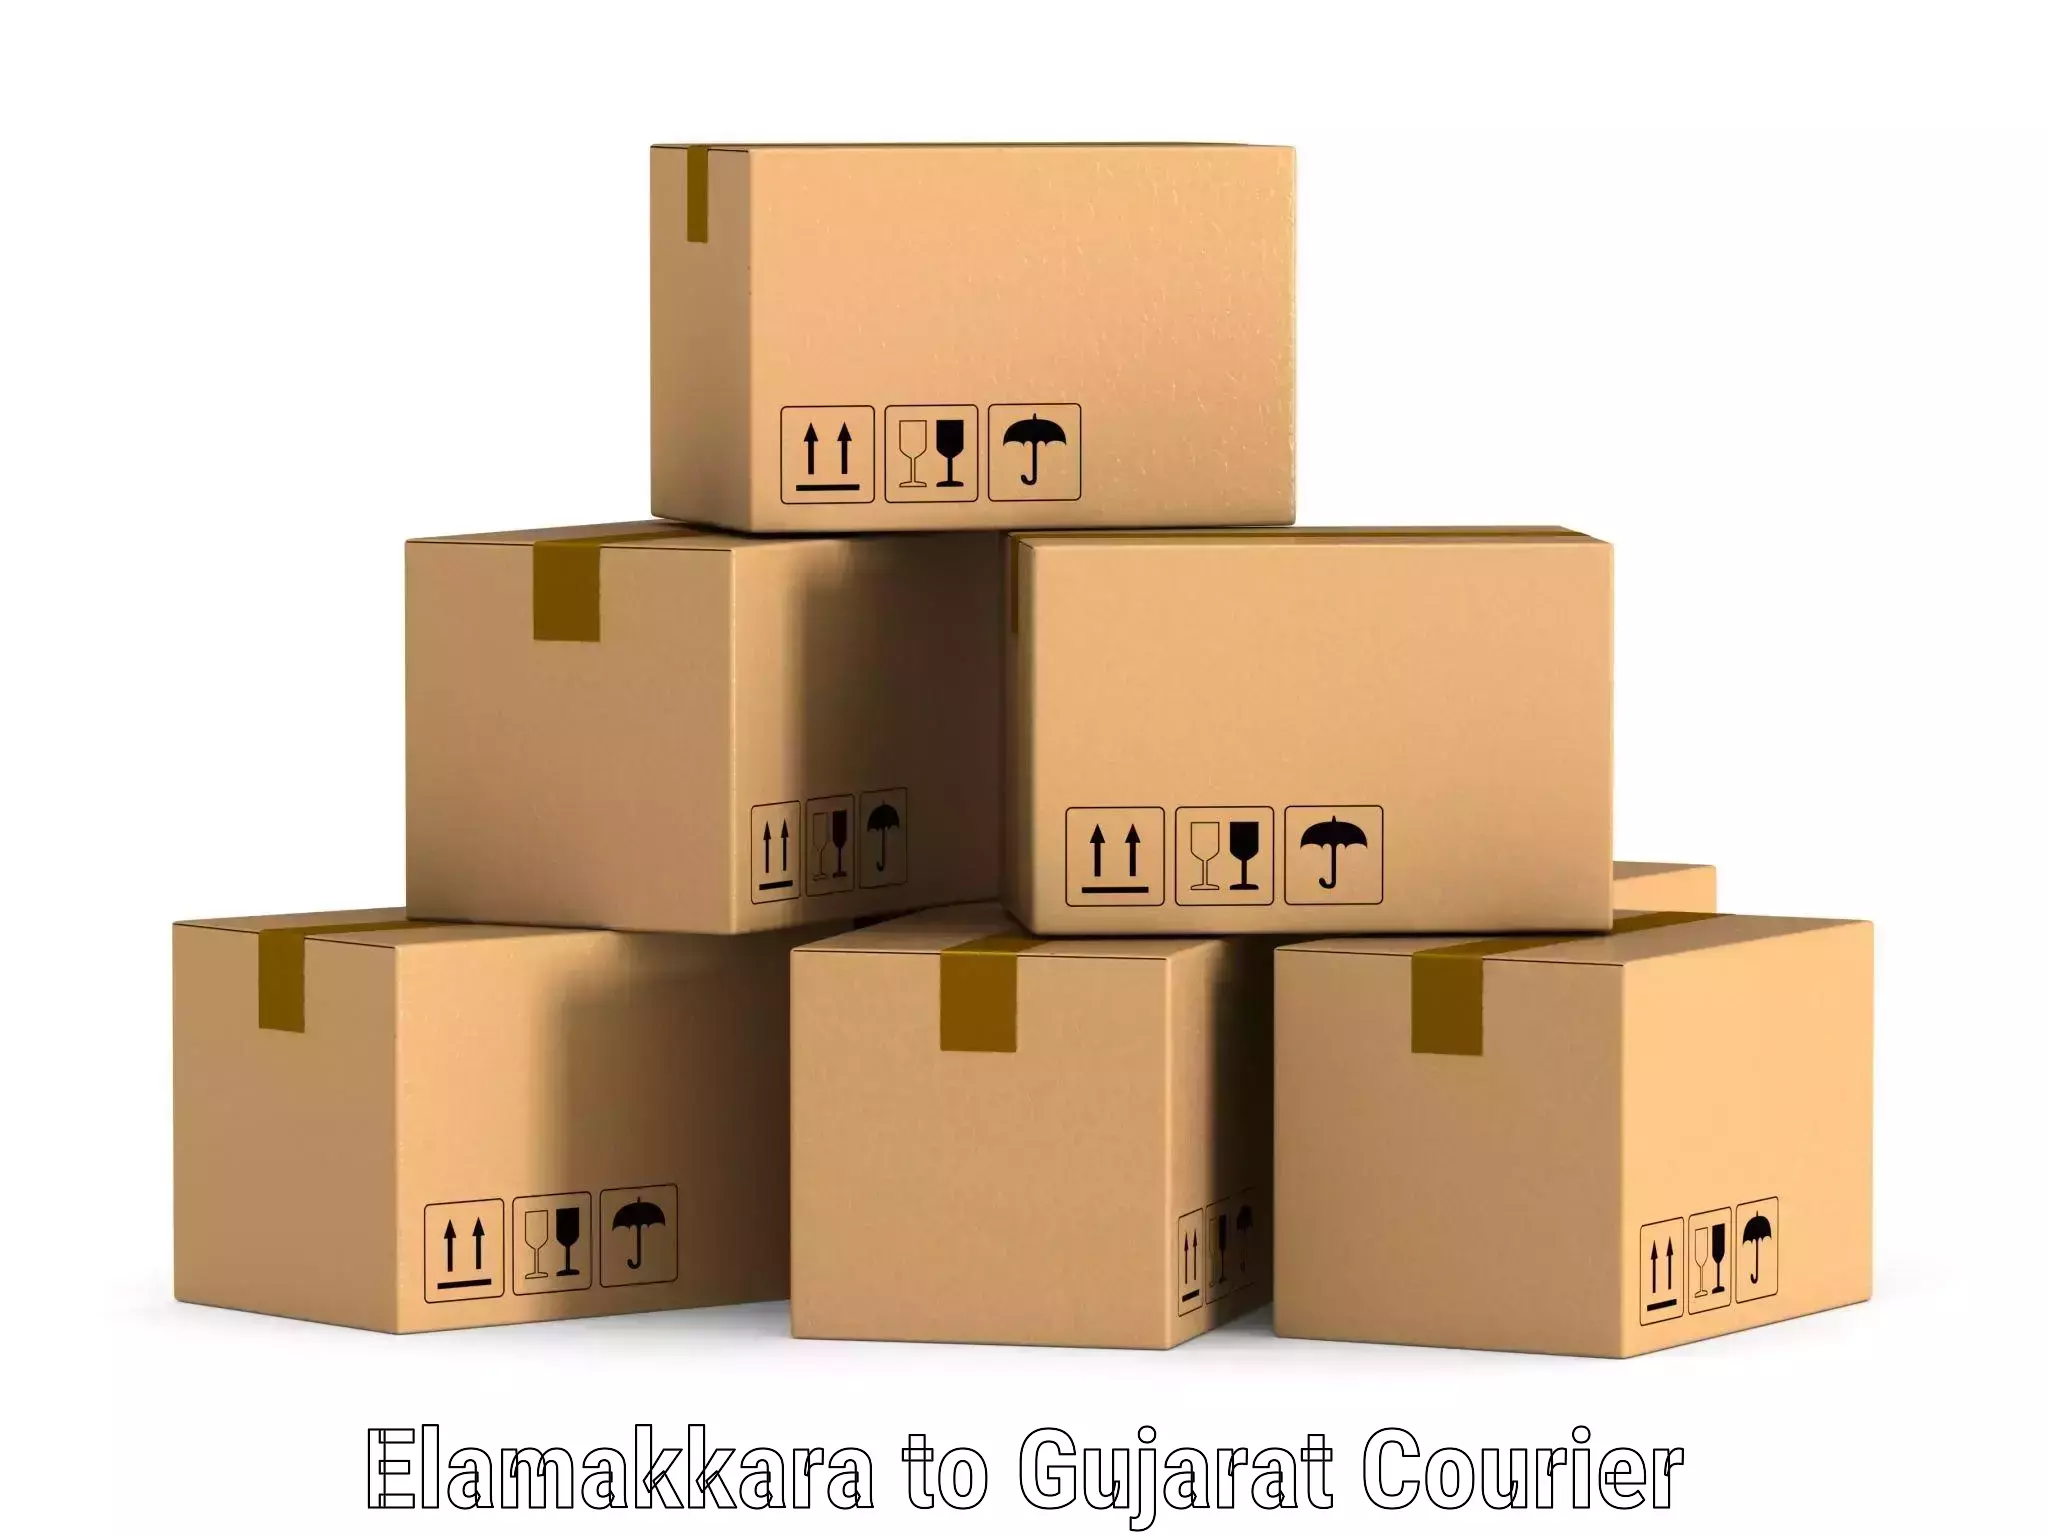 Cargo delivery service Elamakkara to IIIT Vadodara